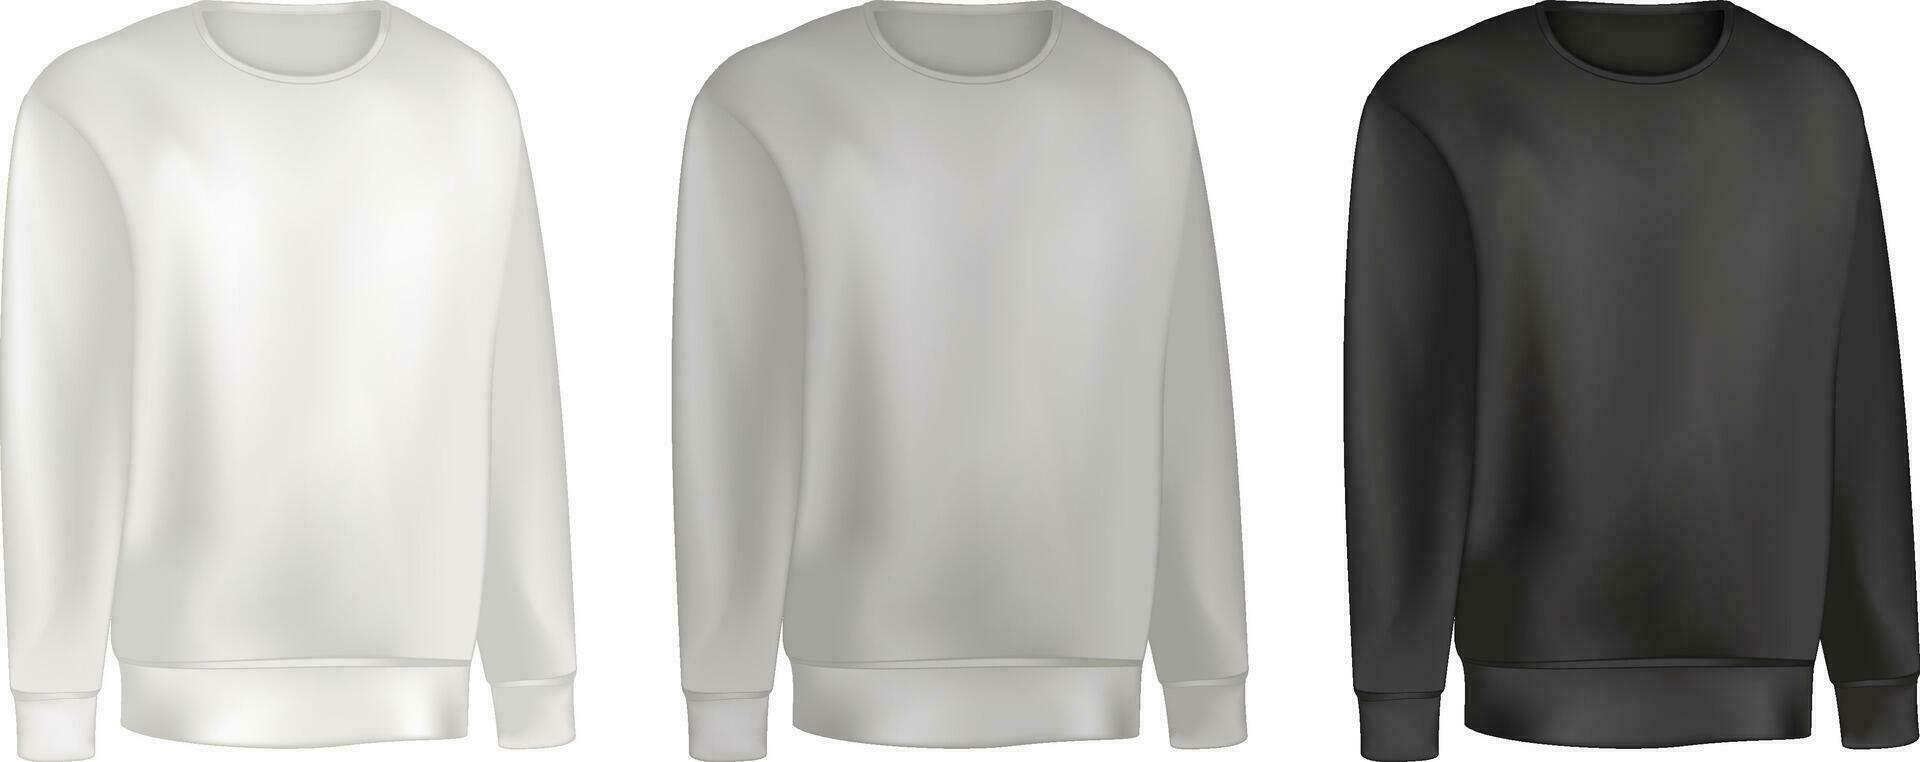 Mens kleding reeks van sweater en raglan trui grijs en zwart kleur. mode illustratie van sport- uniform t shirt. blanco vector sjabloon voorkant keer bekeken. geïsoleerd Aan wit achtergrond.